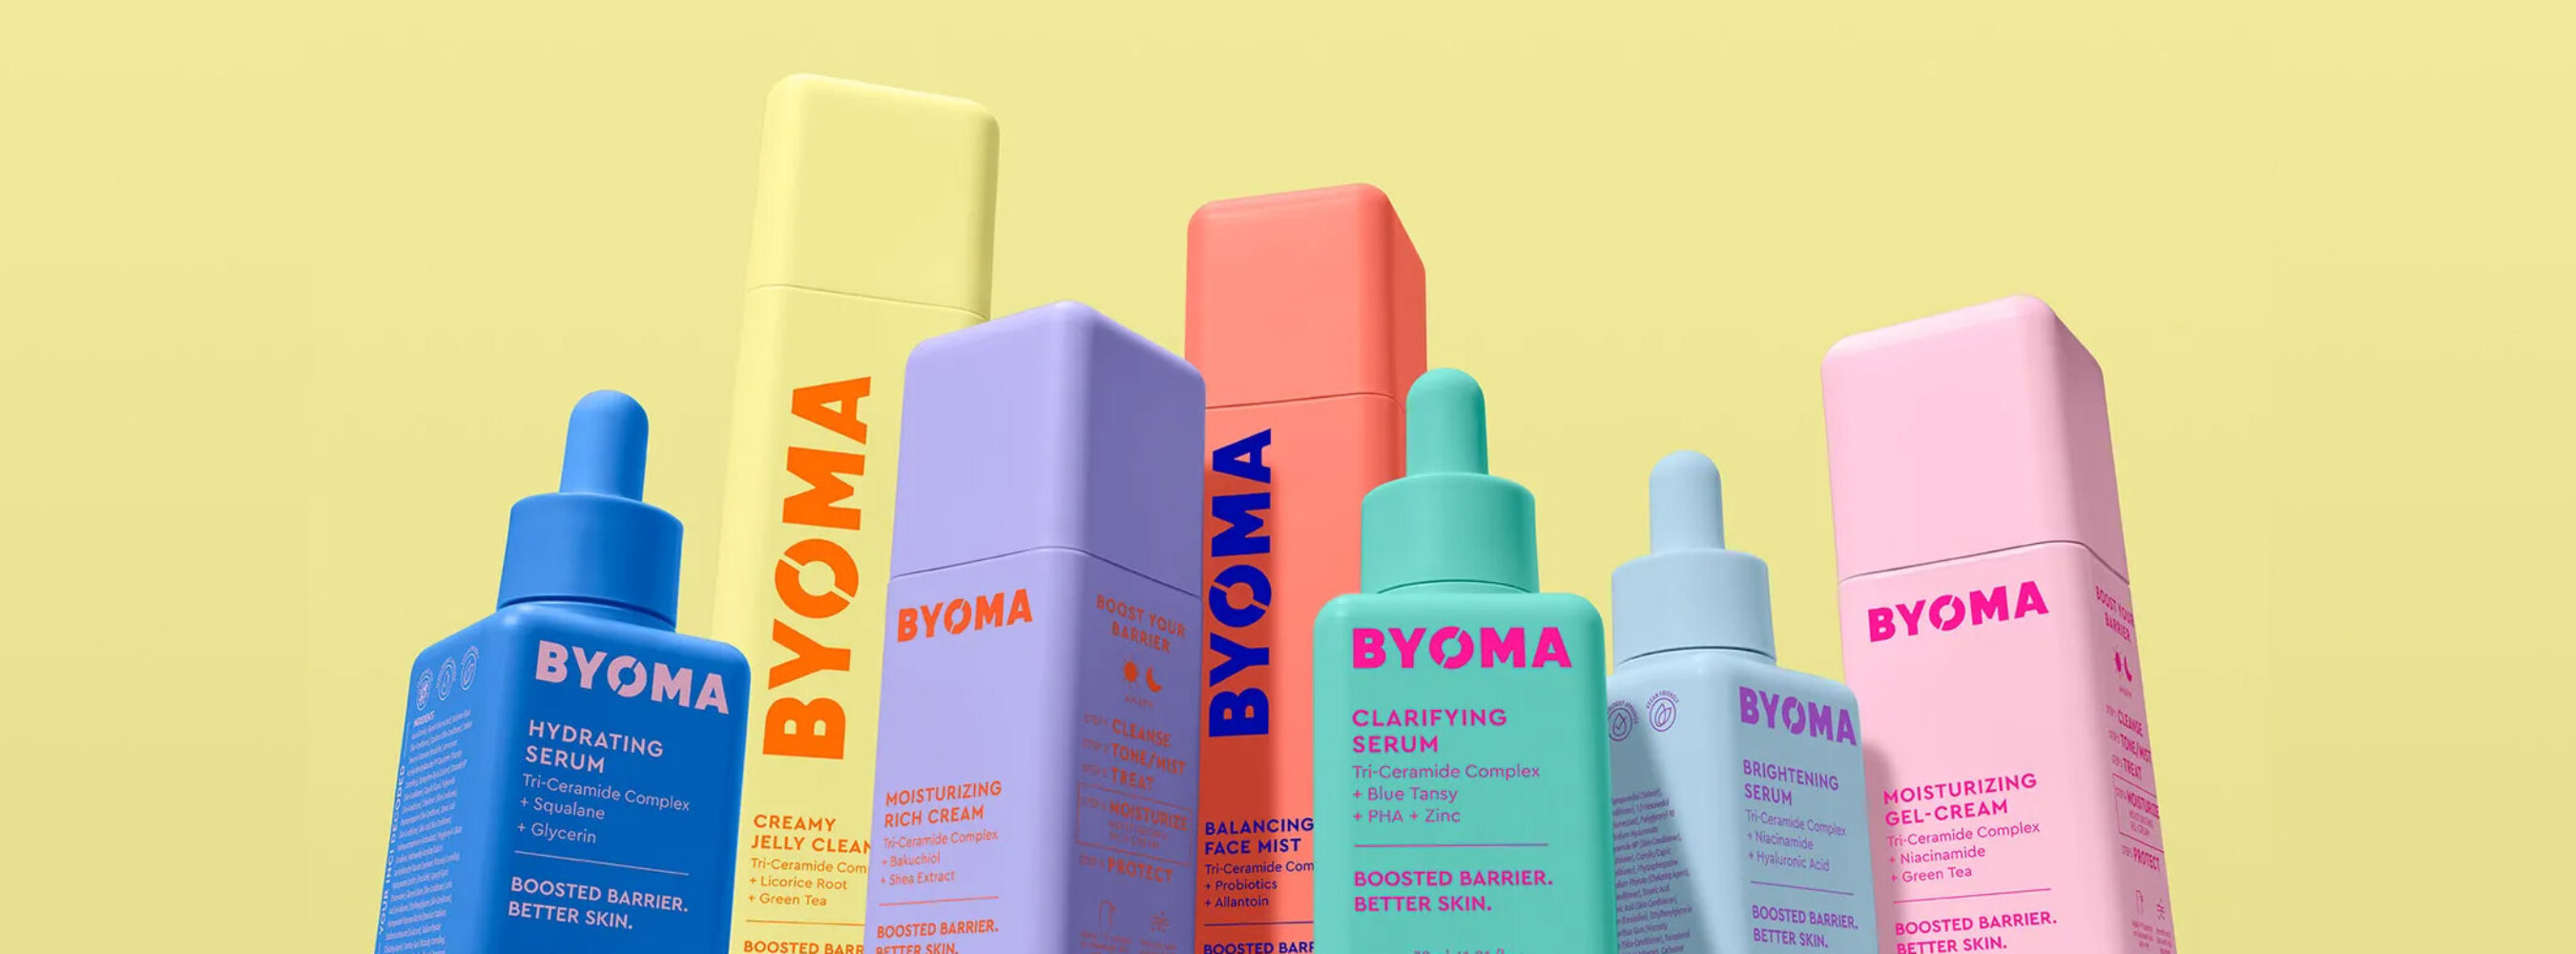 BYOMA Spark AR Makeup Launch